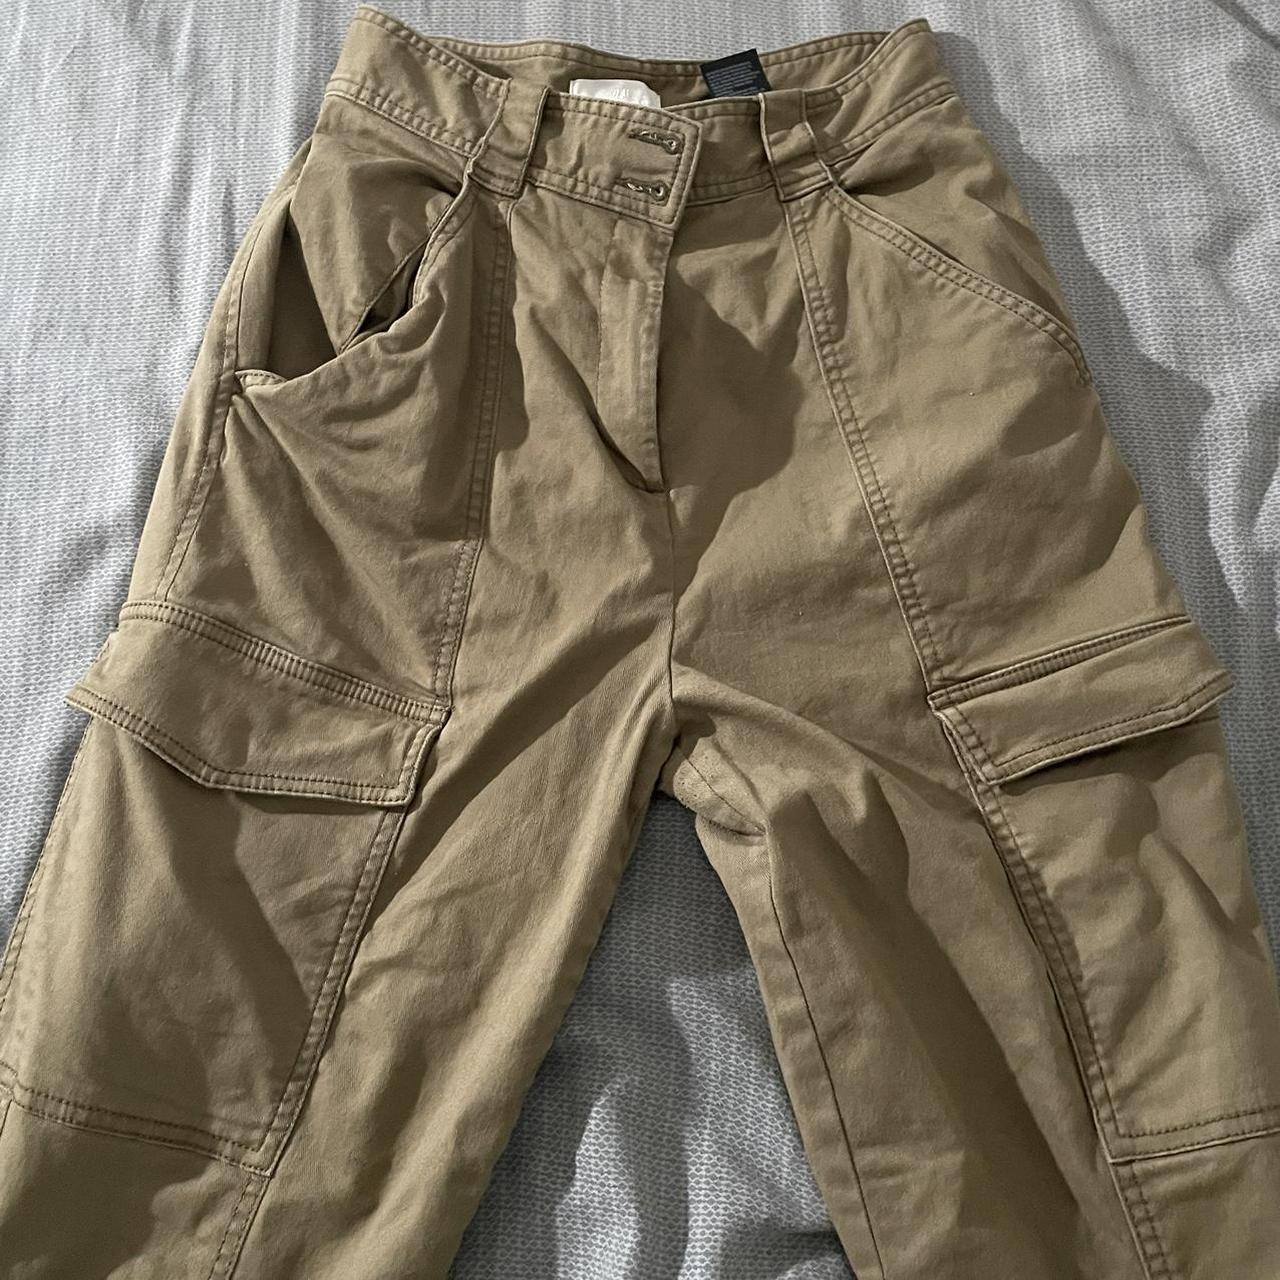 H&M cargo pants. #H&M #pants #cargopants #jeans #sale - Depop